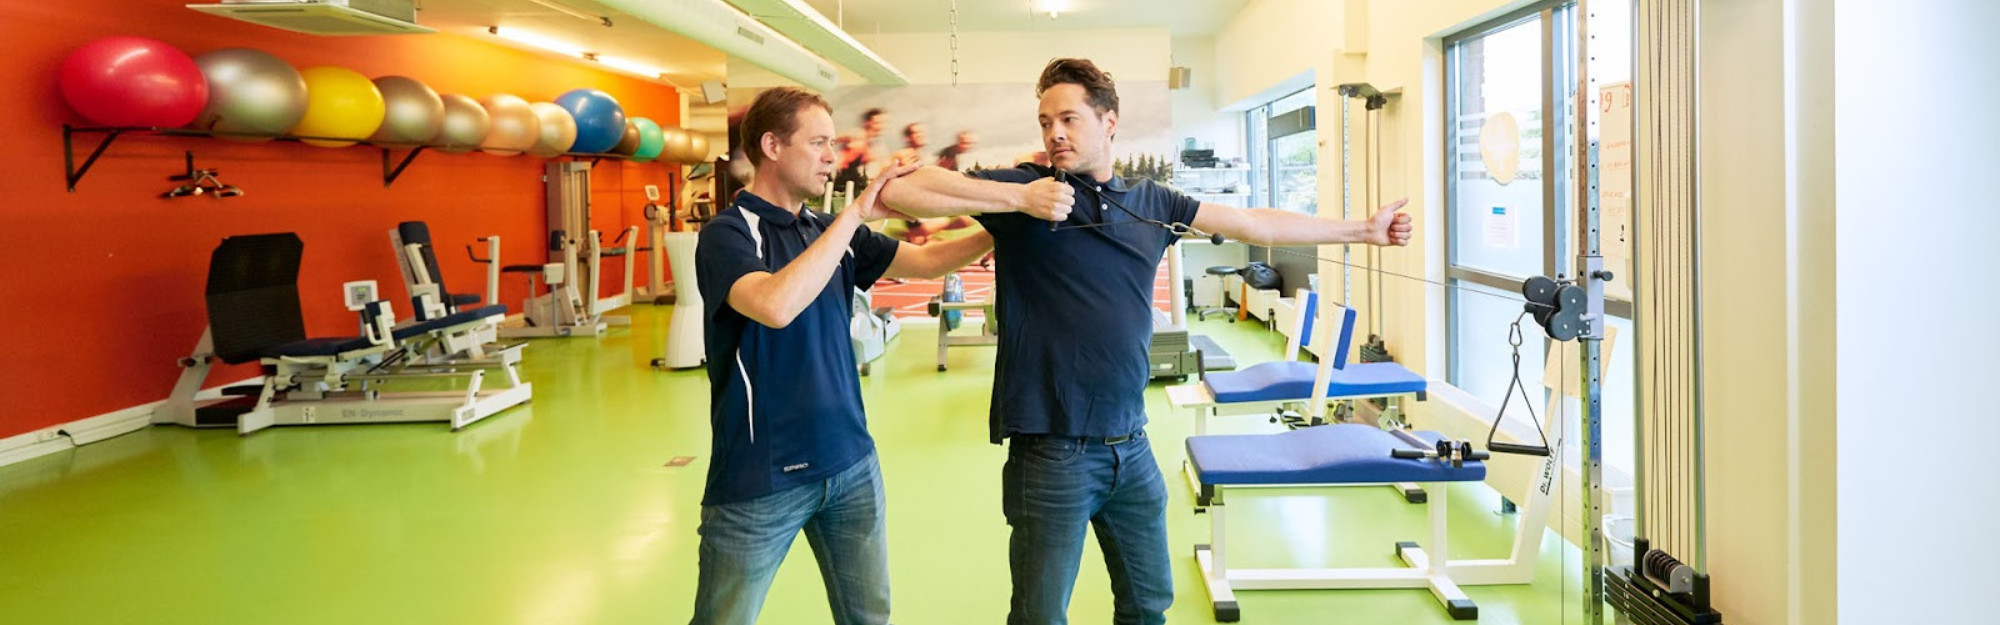 De fysiotherapeuten van Fysiotherapie Plus Rotterdam geven uitleg over de 3 meest voorkomende schouderklachten en leggen uit hoe zij deze kunnen behandelen.